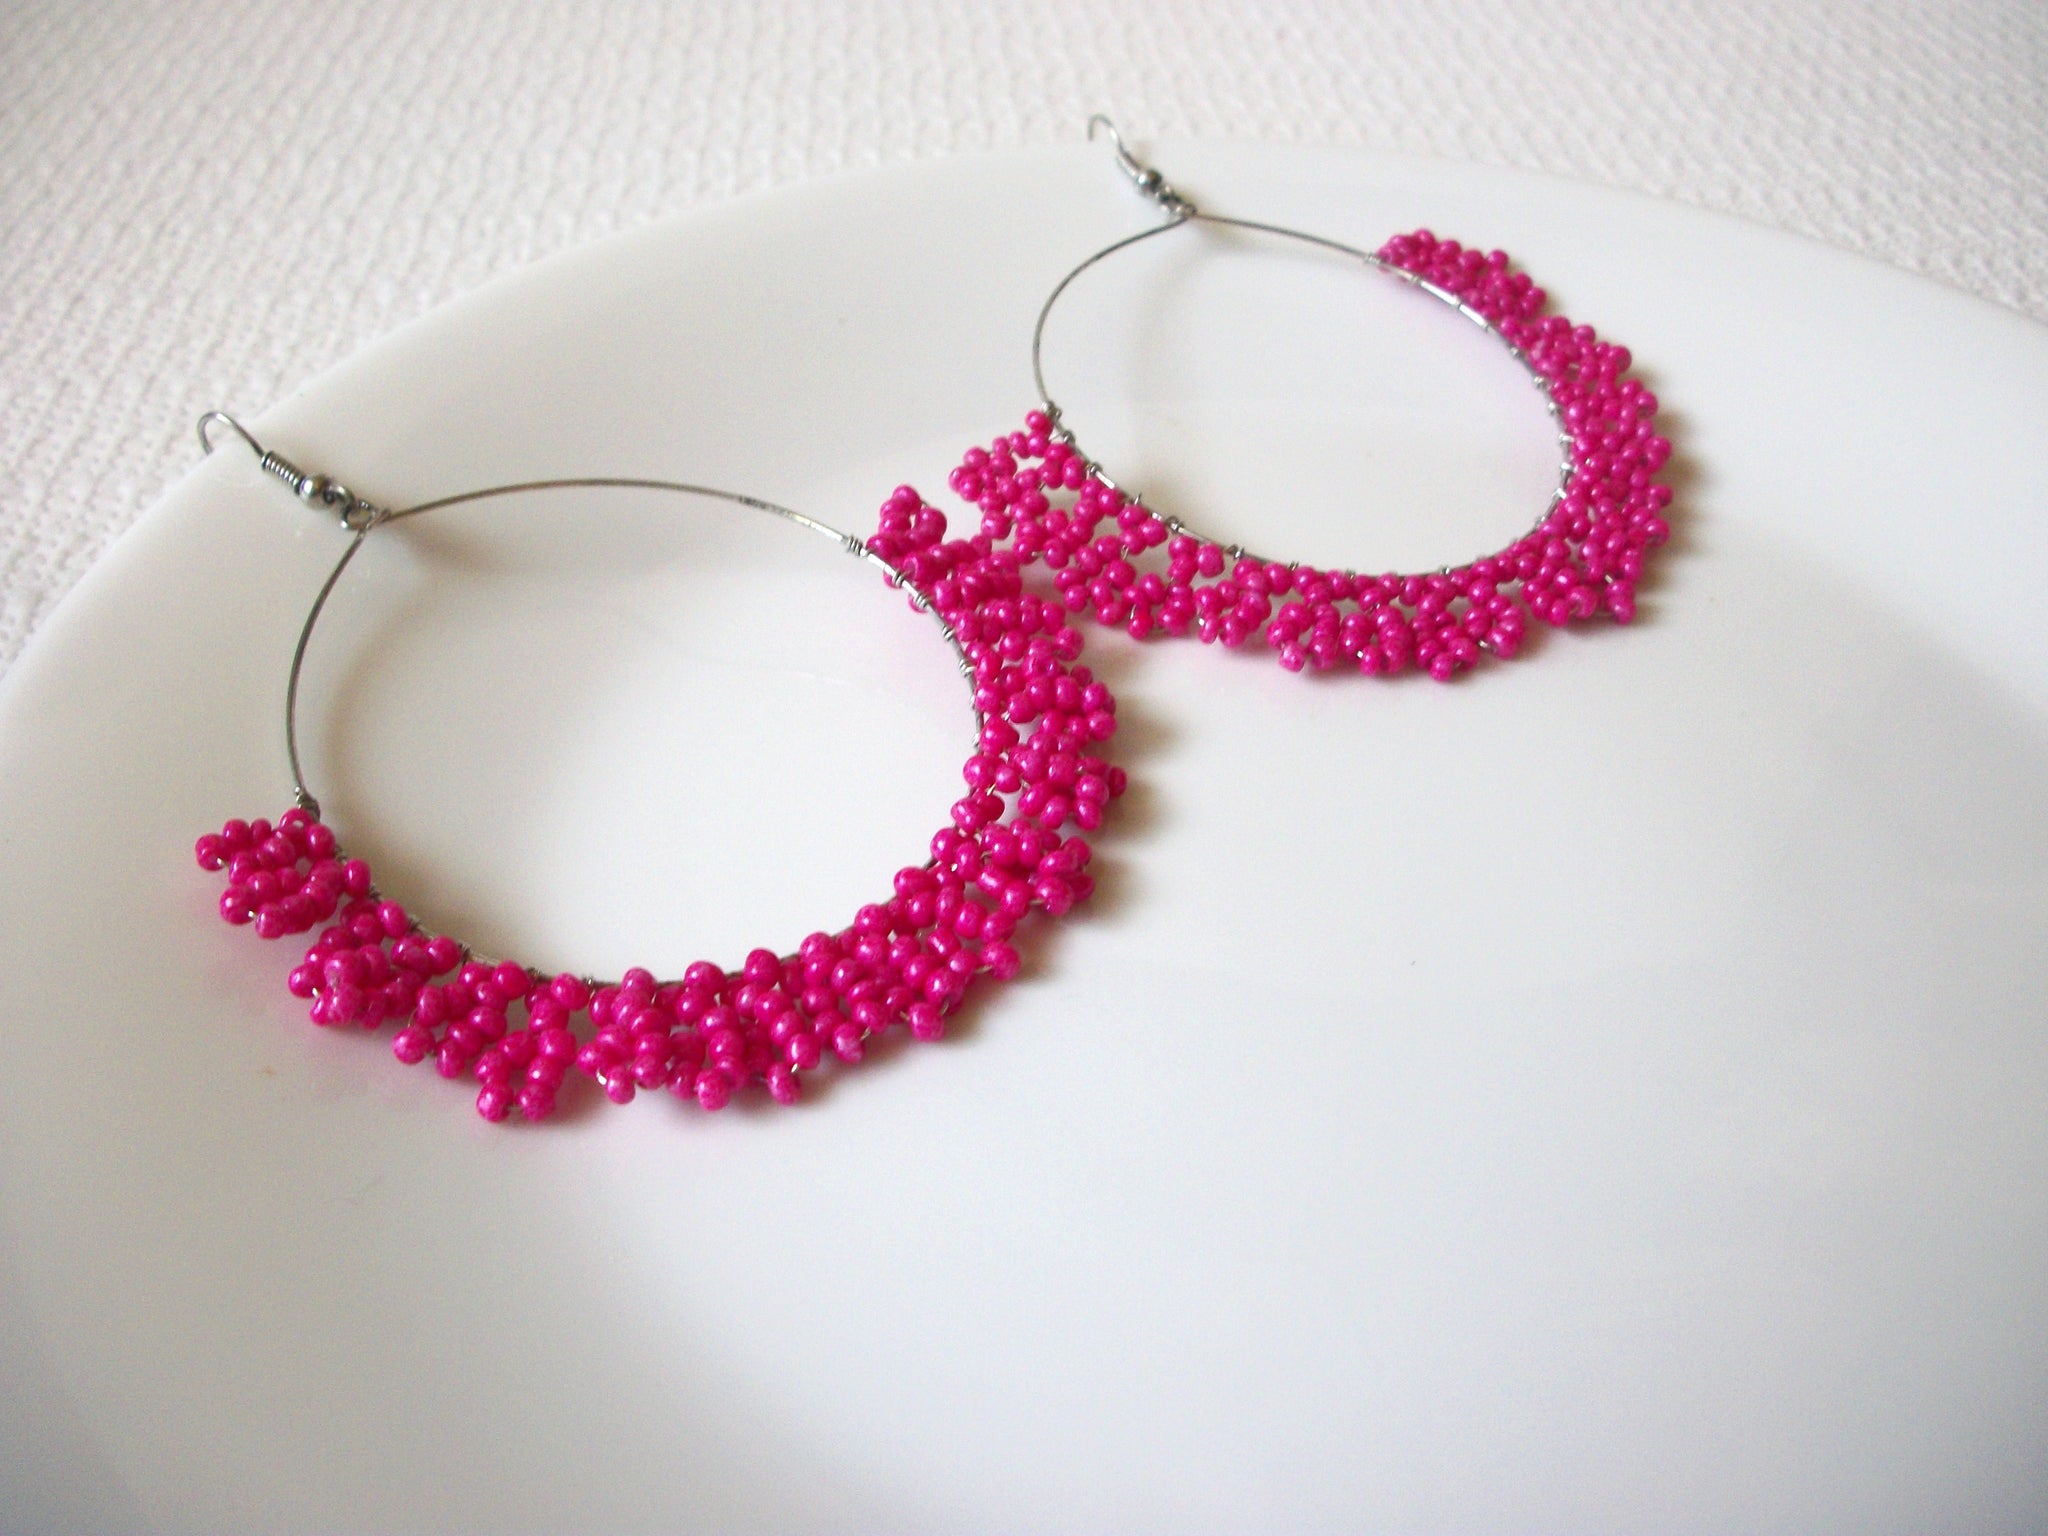 Large Retro Hot Pink Hoop Earrings 80720